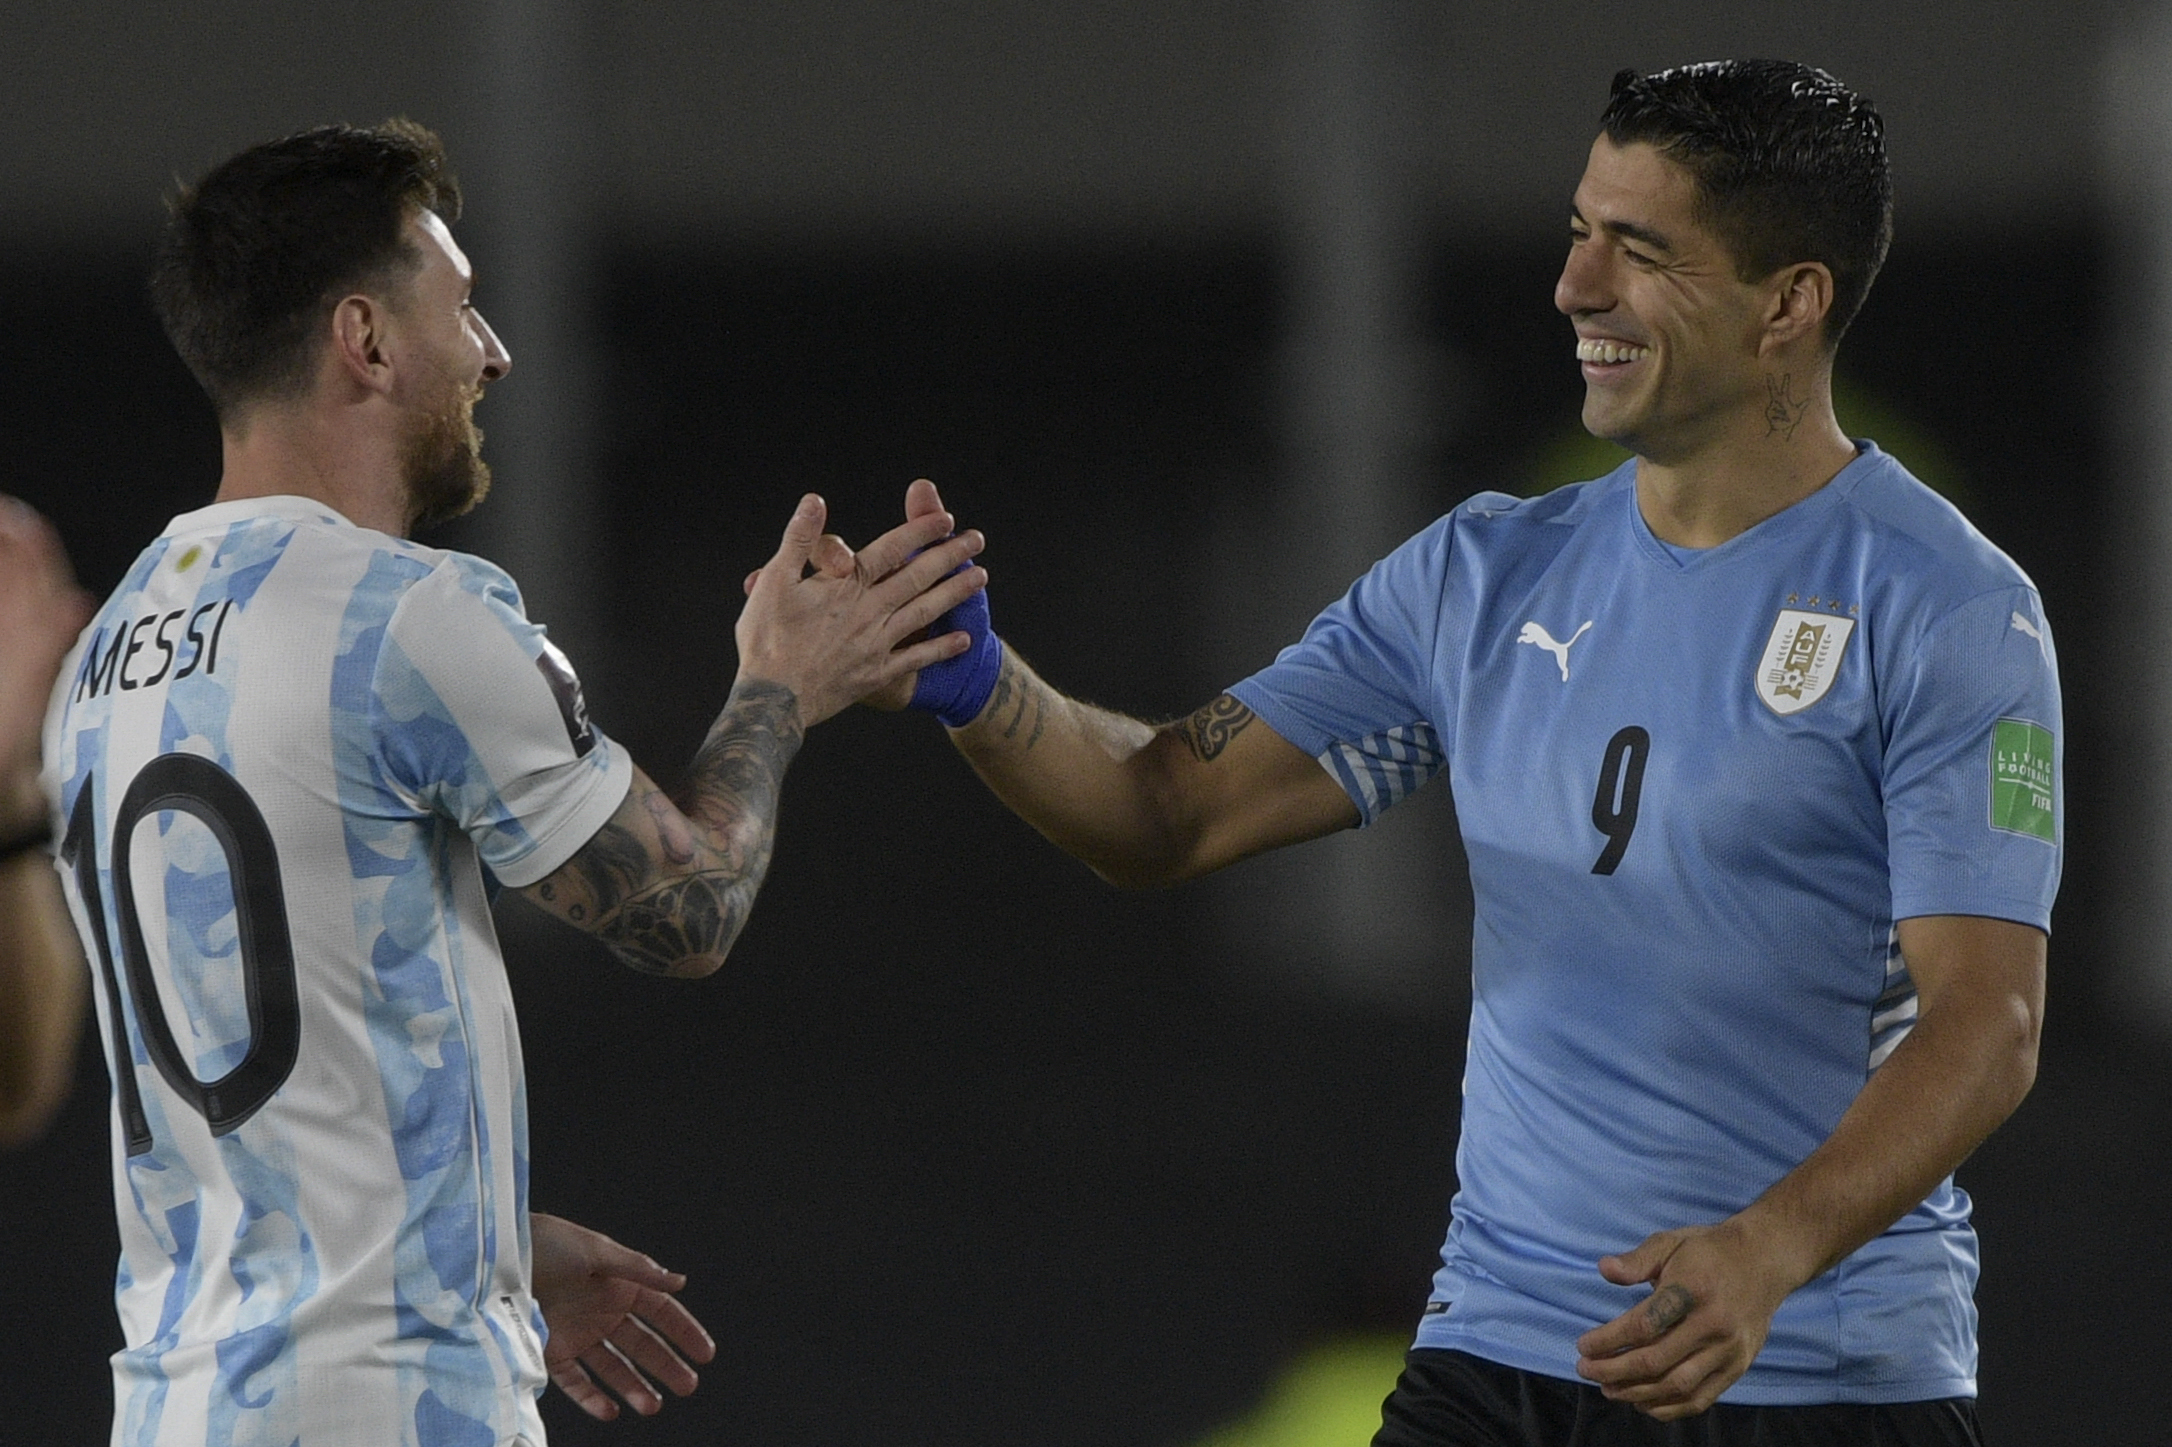 Der Argentinier Messi und der Uruguayer Luis Suarez werden bei Inter Miami wieder vereint sein, nachdem sie bei Barcelona eine starke Freundschaft entwickelt haben